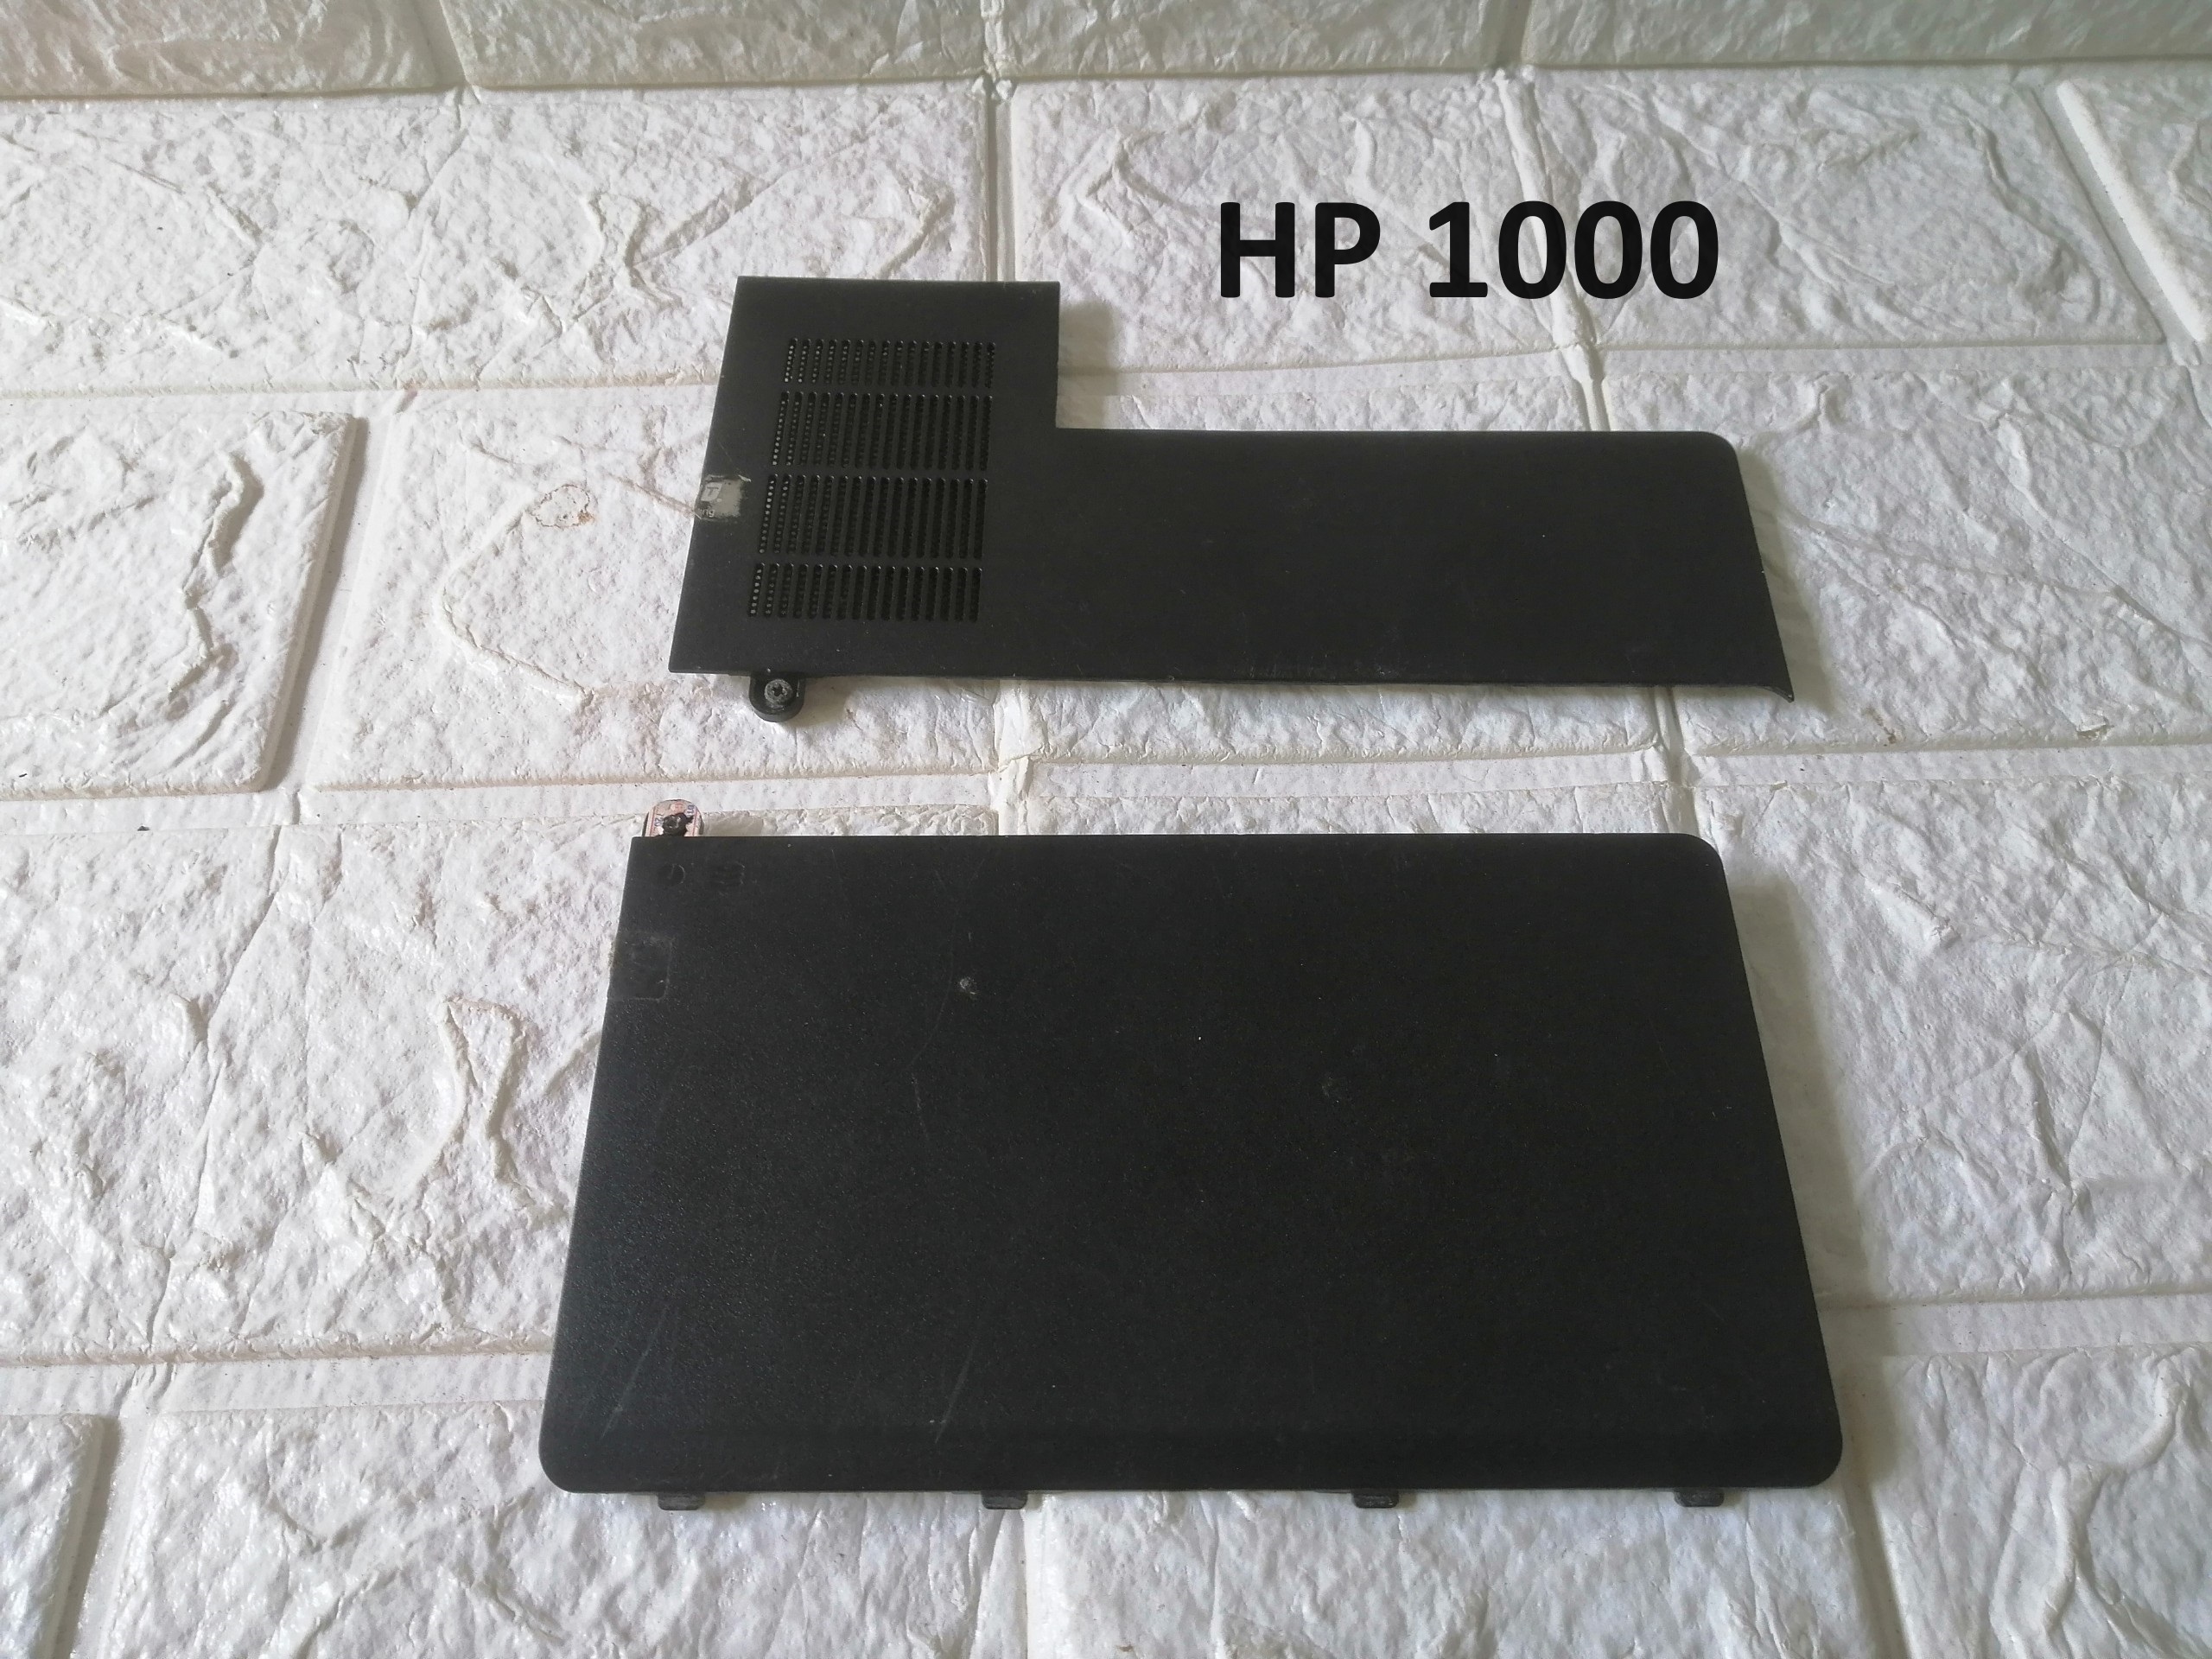 NÁP CHE RAM HDD VỎ LAPTOP HP 1000